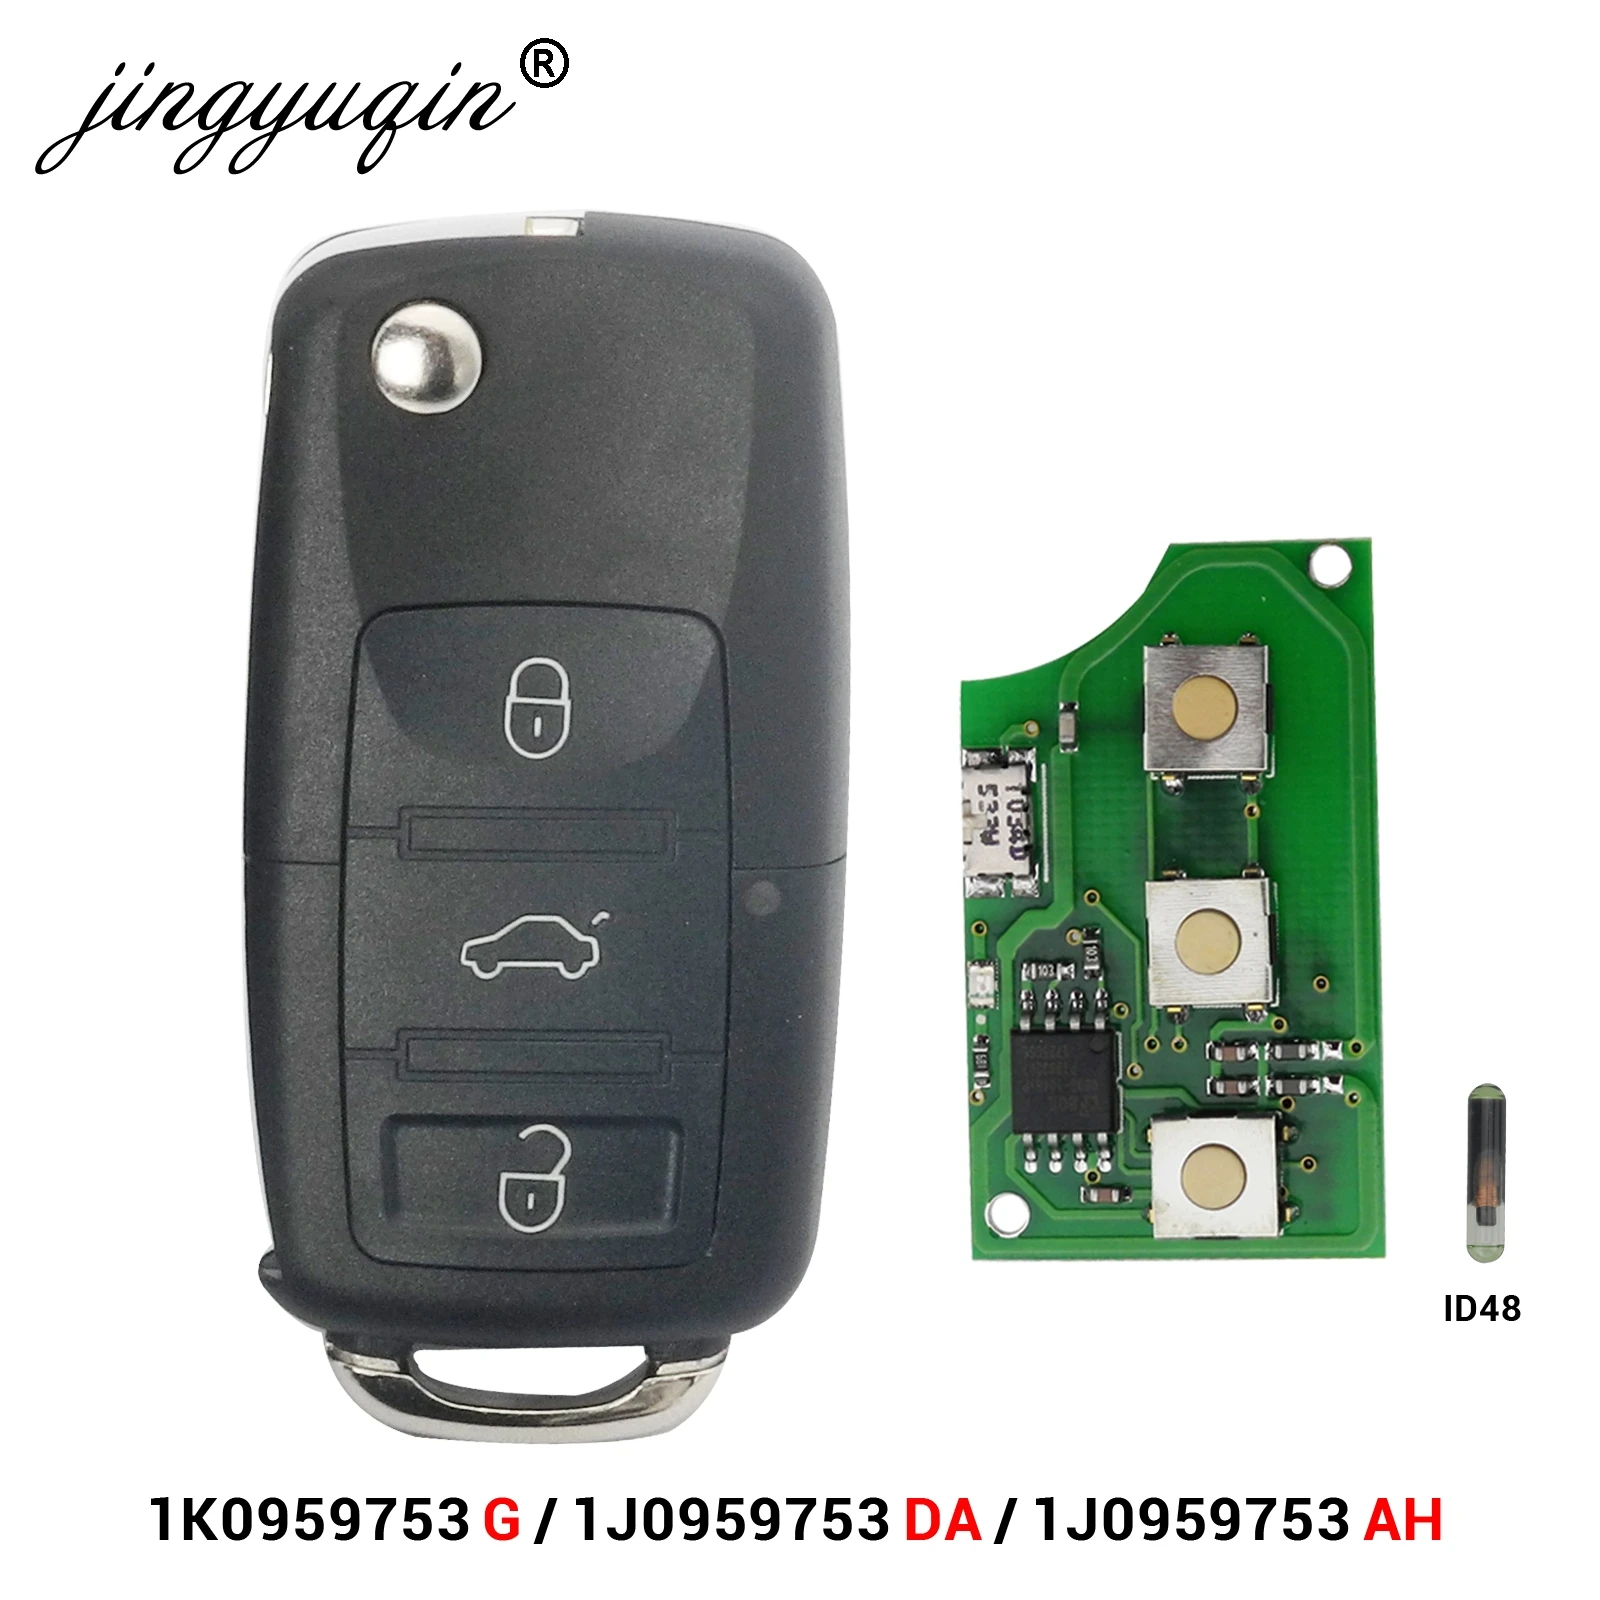 Jingyuqin-mando a distancia con tapa de 3 botones para coche, accesorio para VW PASSAT Polo Skoda, Seat Polo/Golf/Beetle 1J0959753 DA/AH 1K0959753G 434Mhz ID48